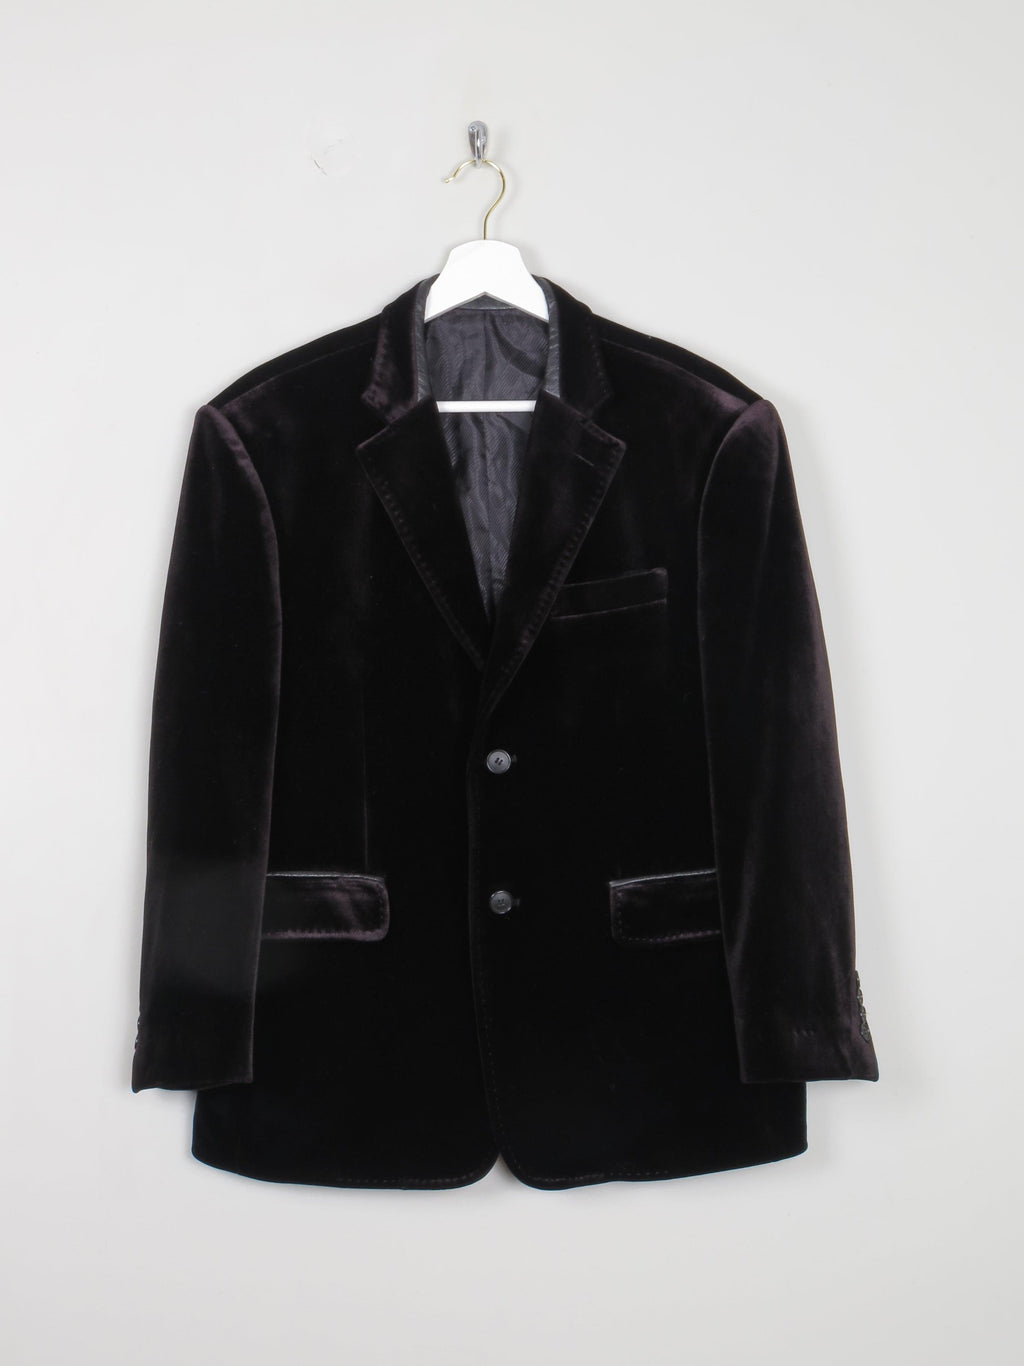 Men's Black Velvet Jacket 40" - The Harlequin